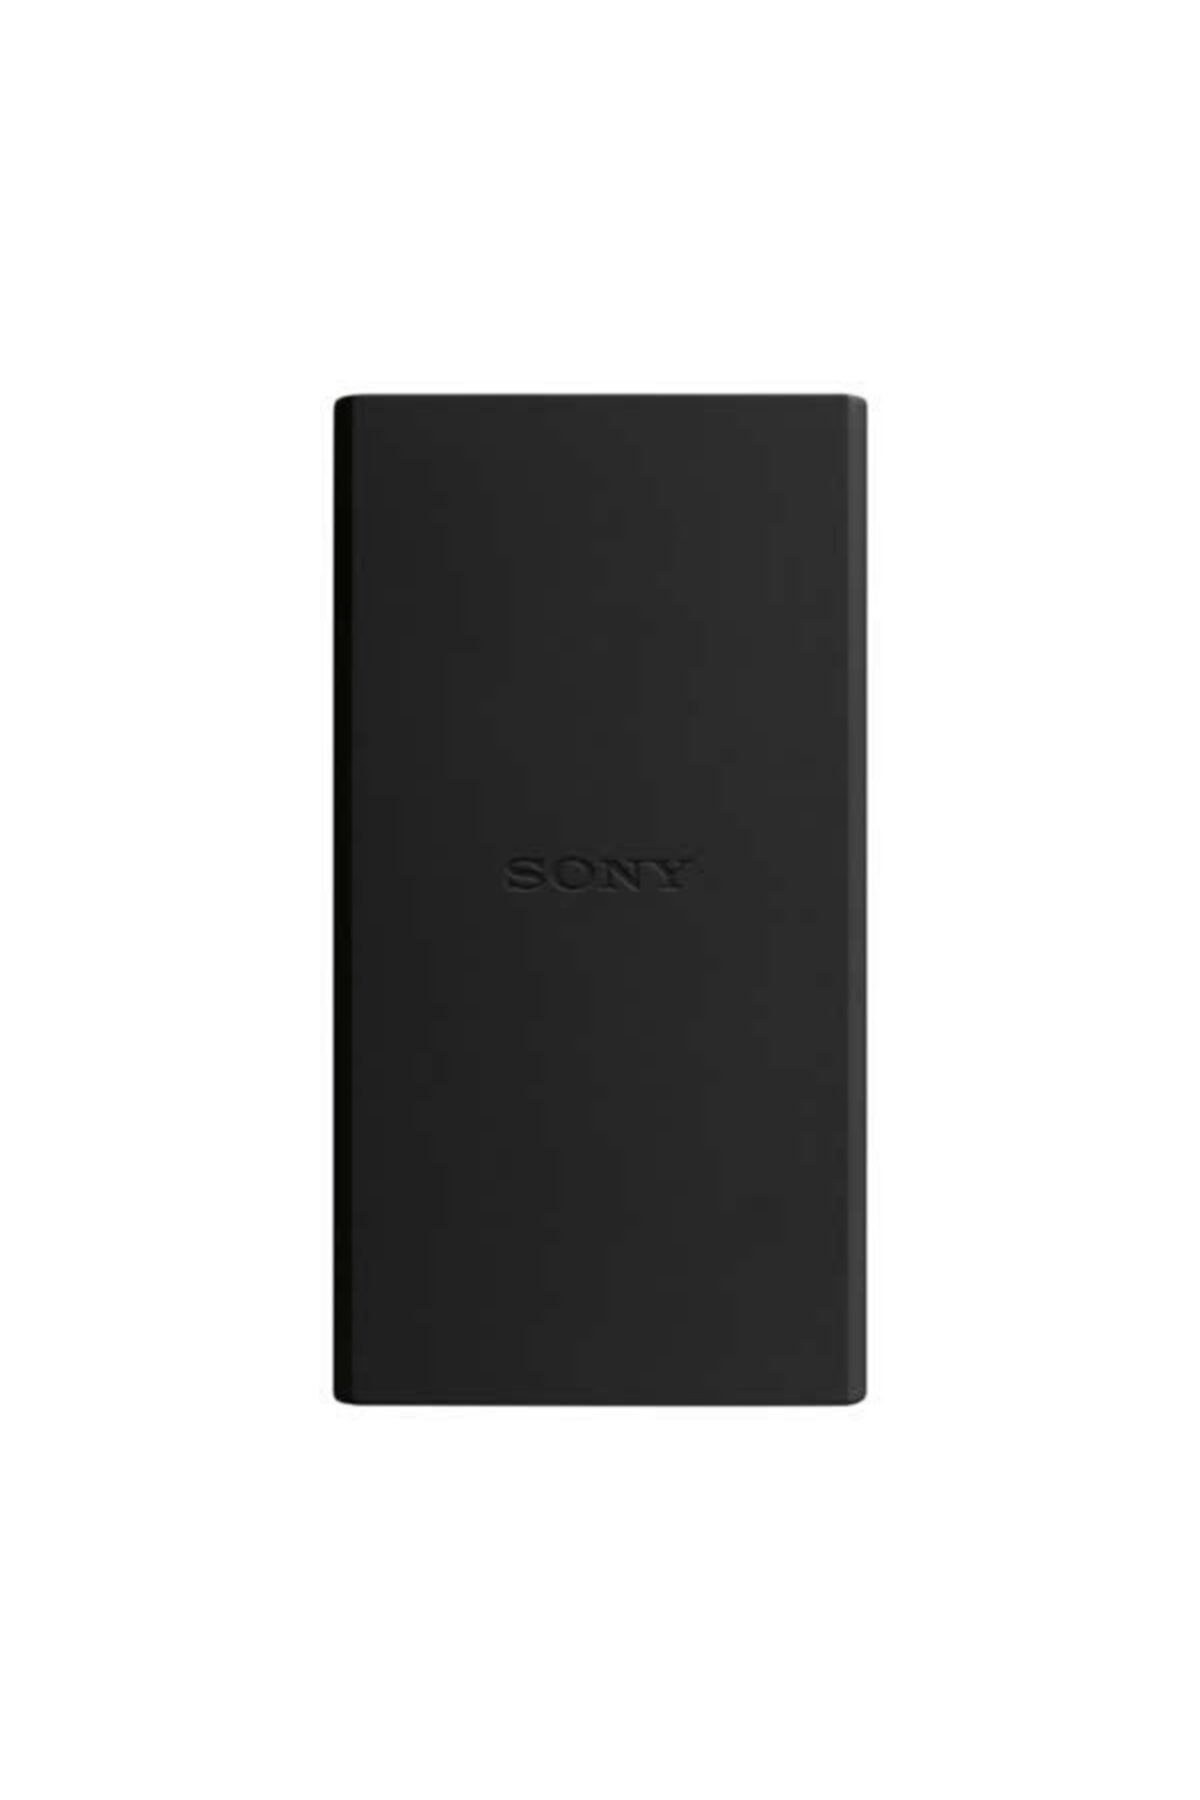 Sony Cp-v10 10.000mah Powerbank Taşınabilir Şarj Cihazı Siyah